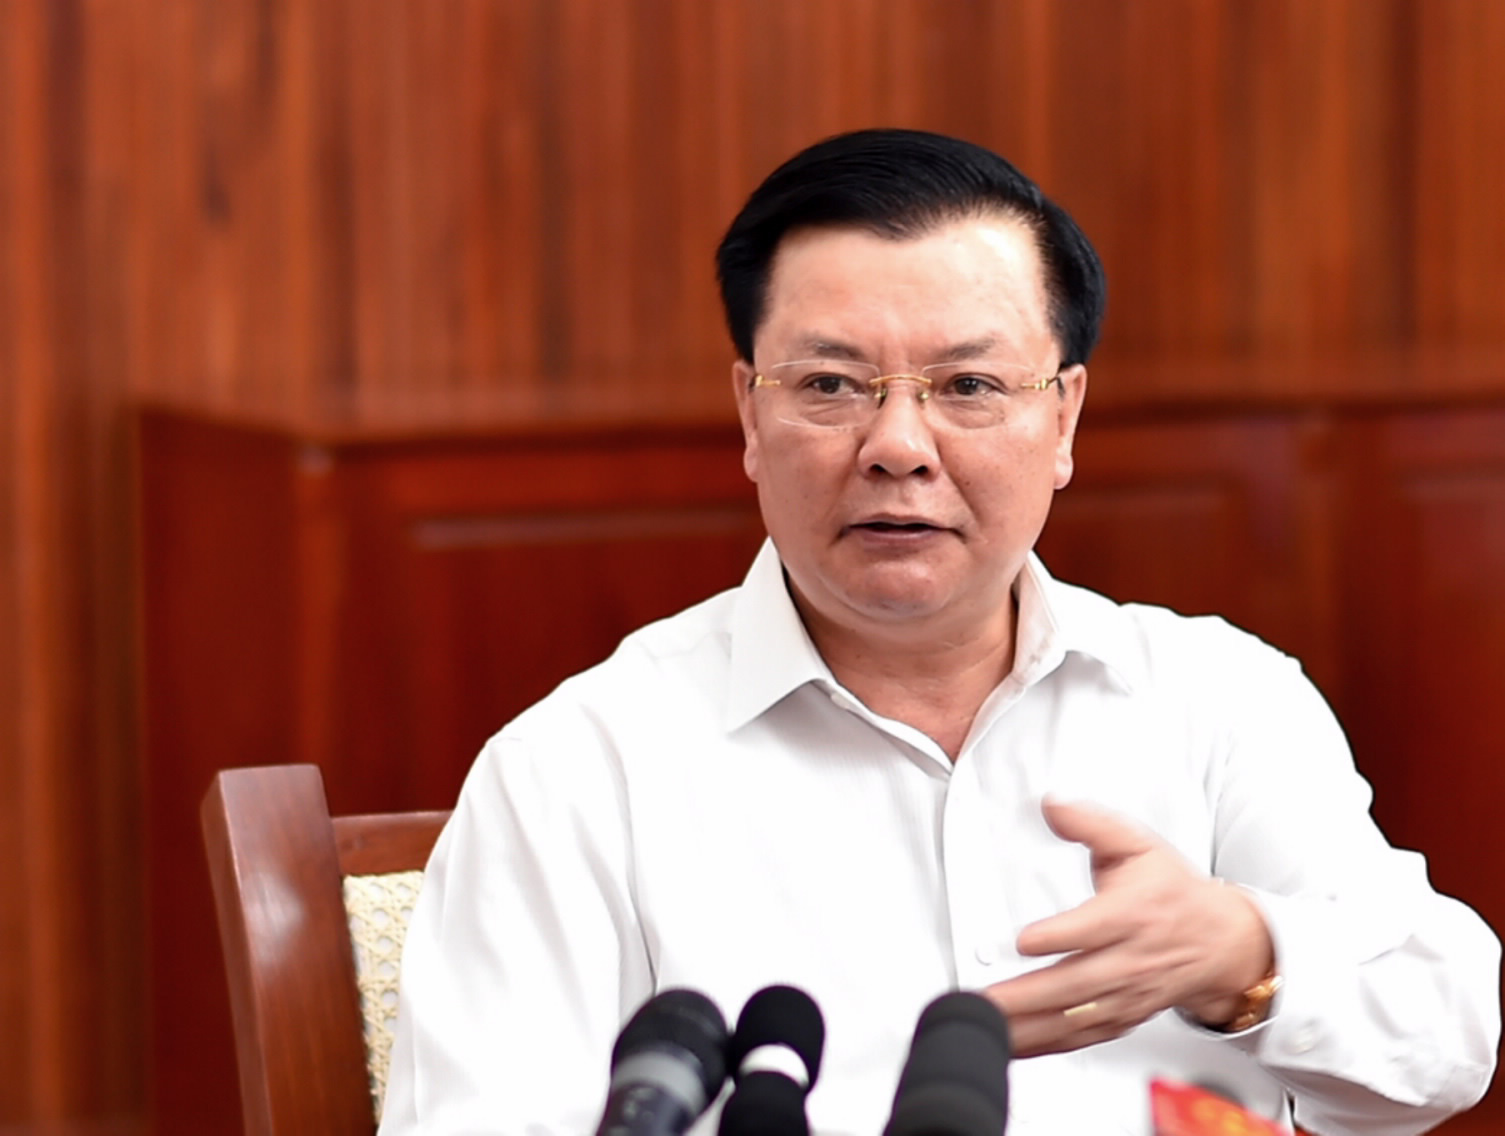 Nghi vấn Công ty Nhật ở Bắc Ninh hối lộ 5,4 tỷ đồng: Bộ trưởng Đinh Tiến Dũng nói lập đoàn thanh tra - Ảnh 1.